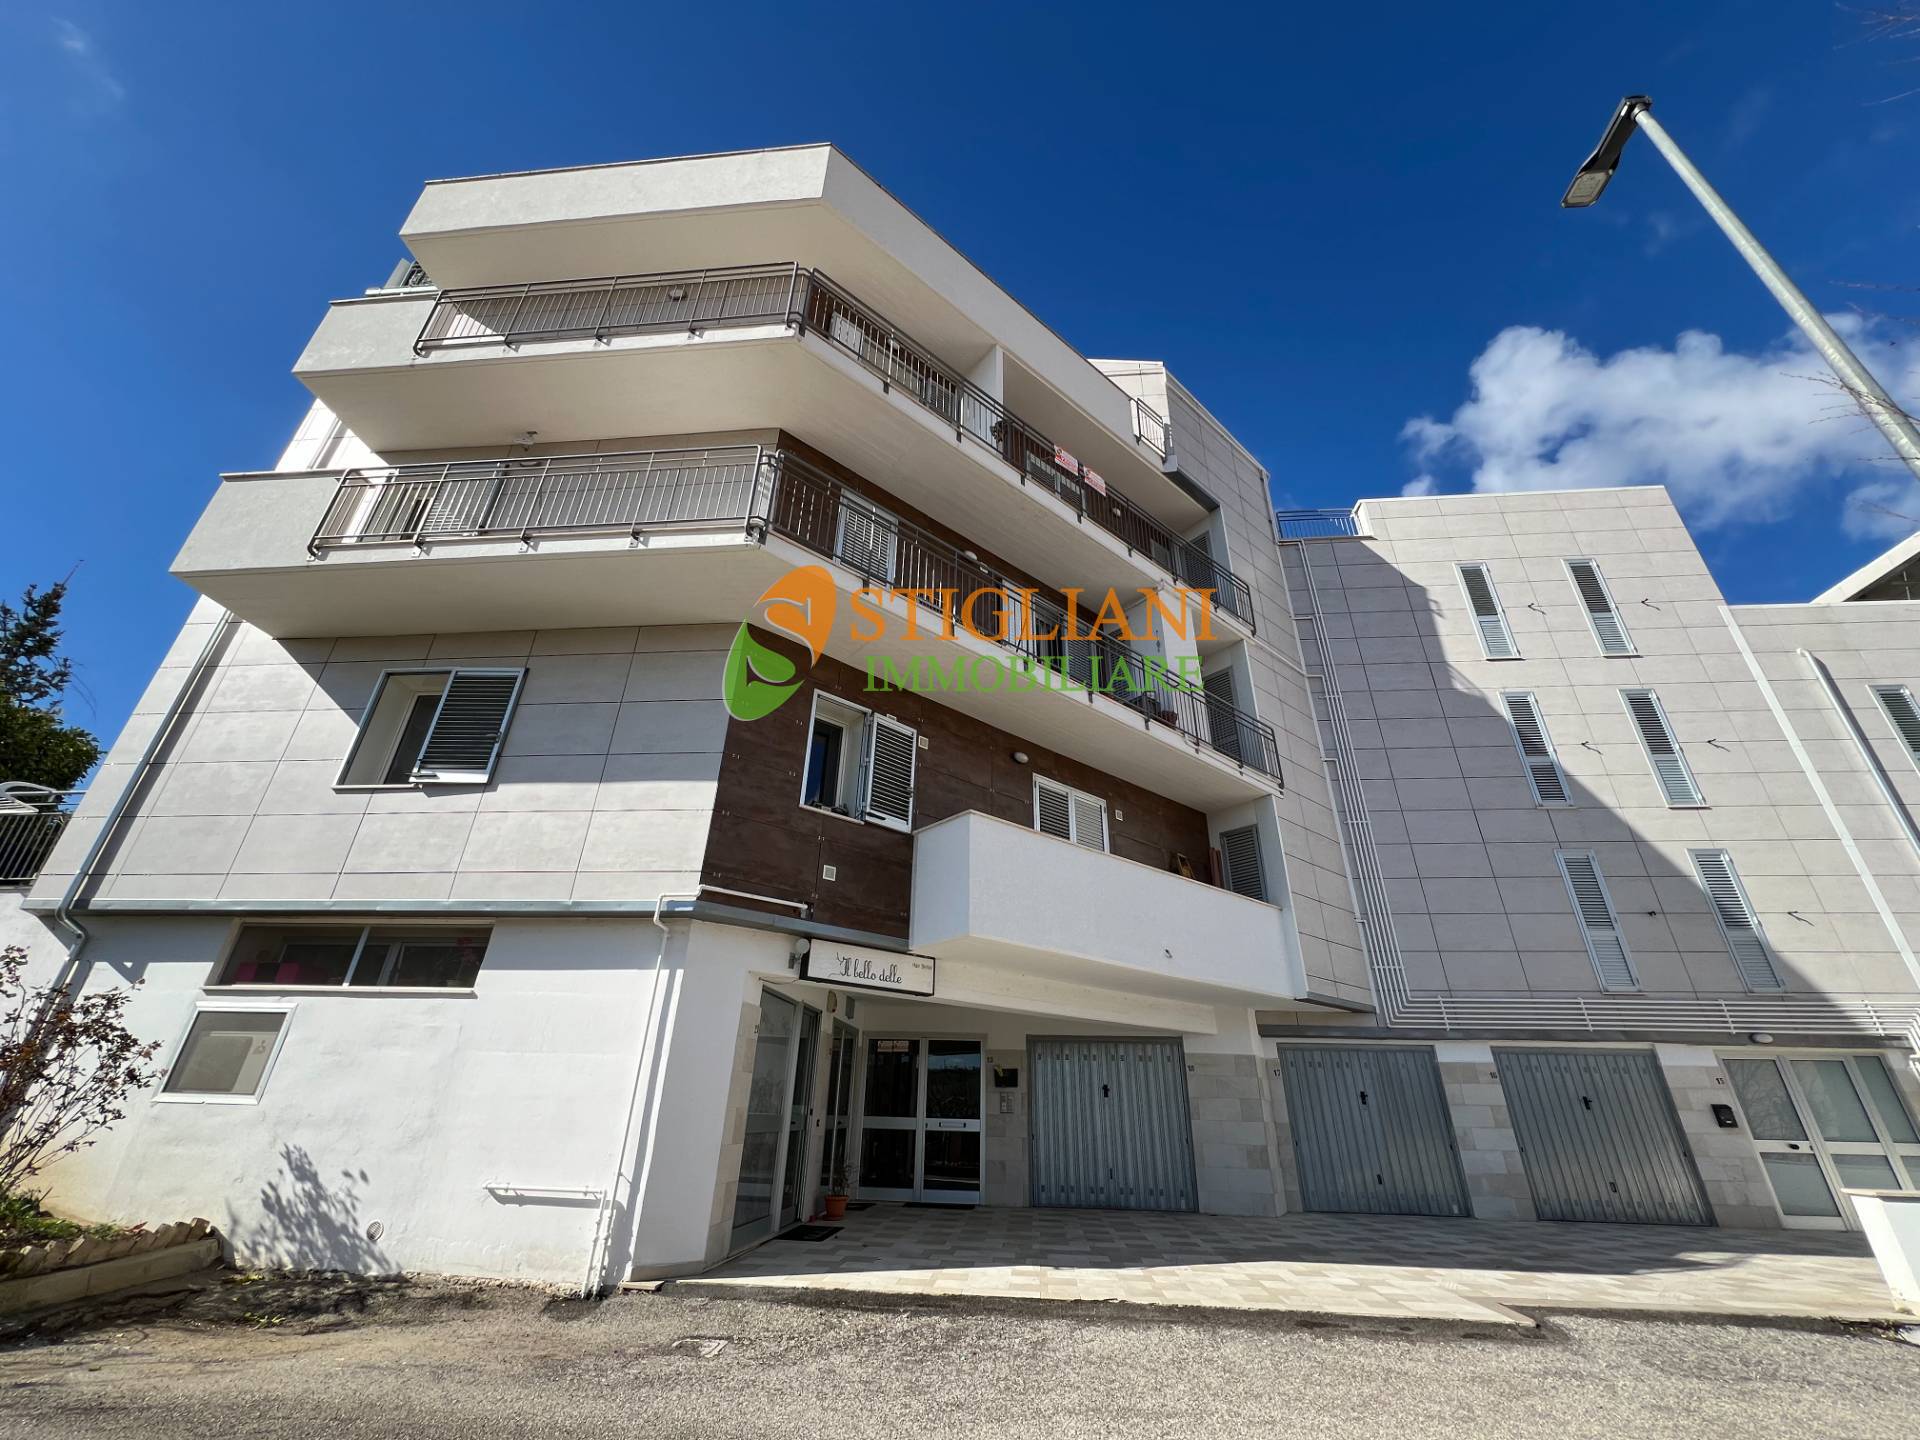 Appartamento in vendita a Ripalimosani, 5 locali, zona Località: ViaSanRocco, prezzo € 145.000 | PortaleAgenzieImmobiliari.it